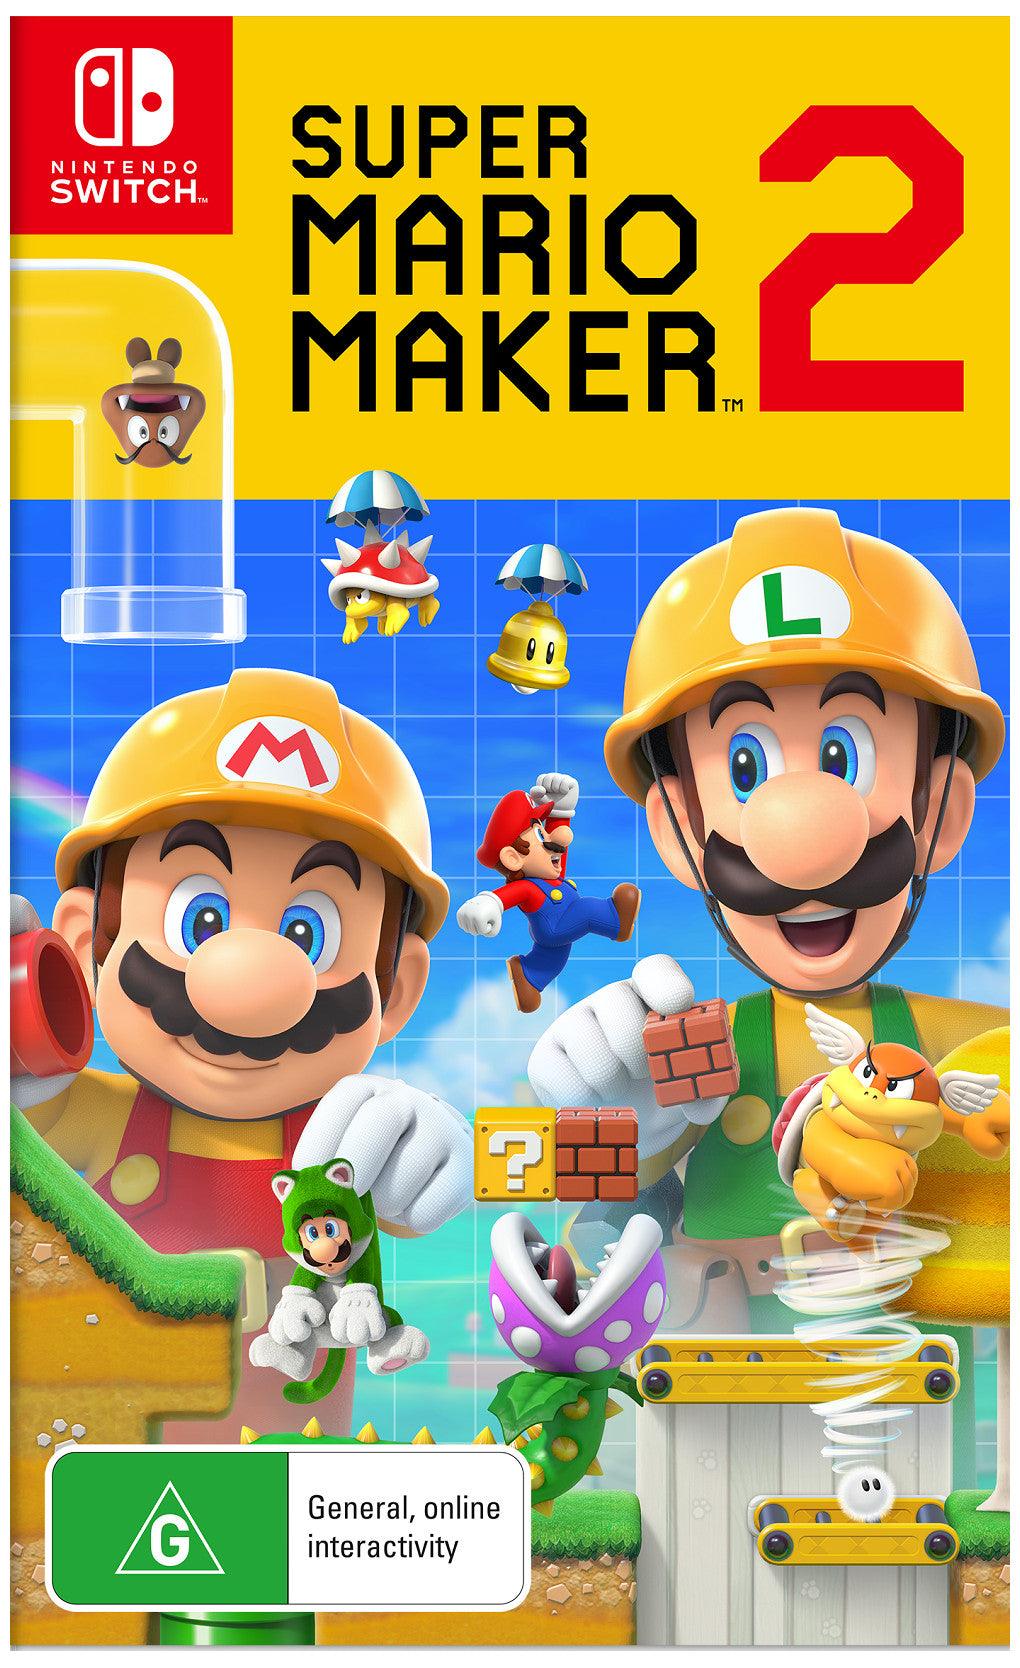 VR-66998 SWI Super Mario Maker 2 - VR Distribution - Titan Pop Culture